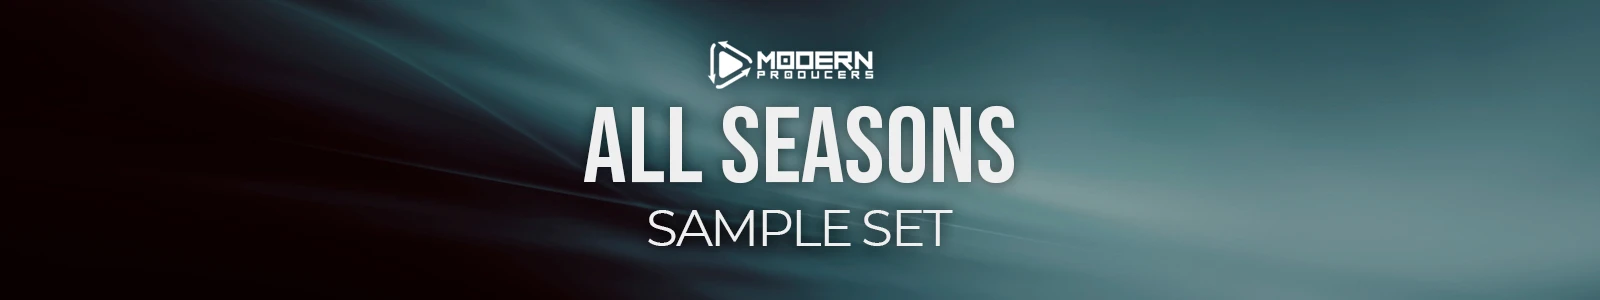 all seasons sample set